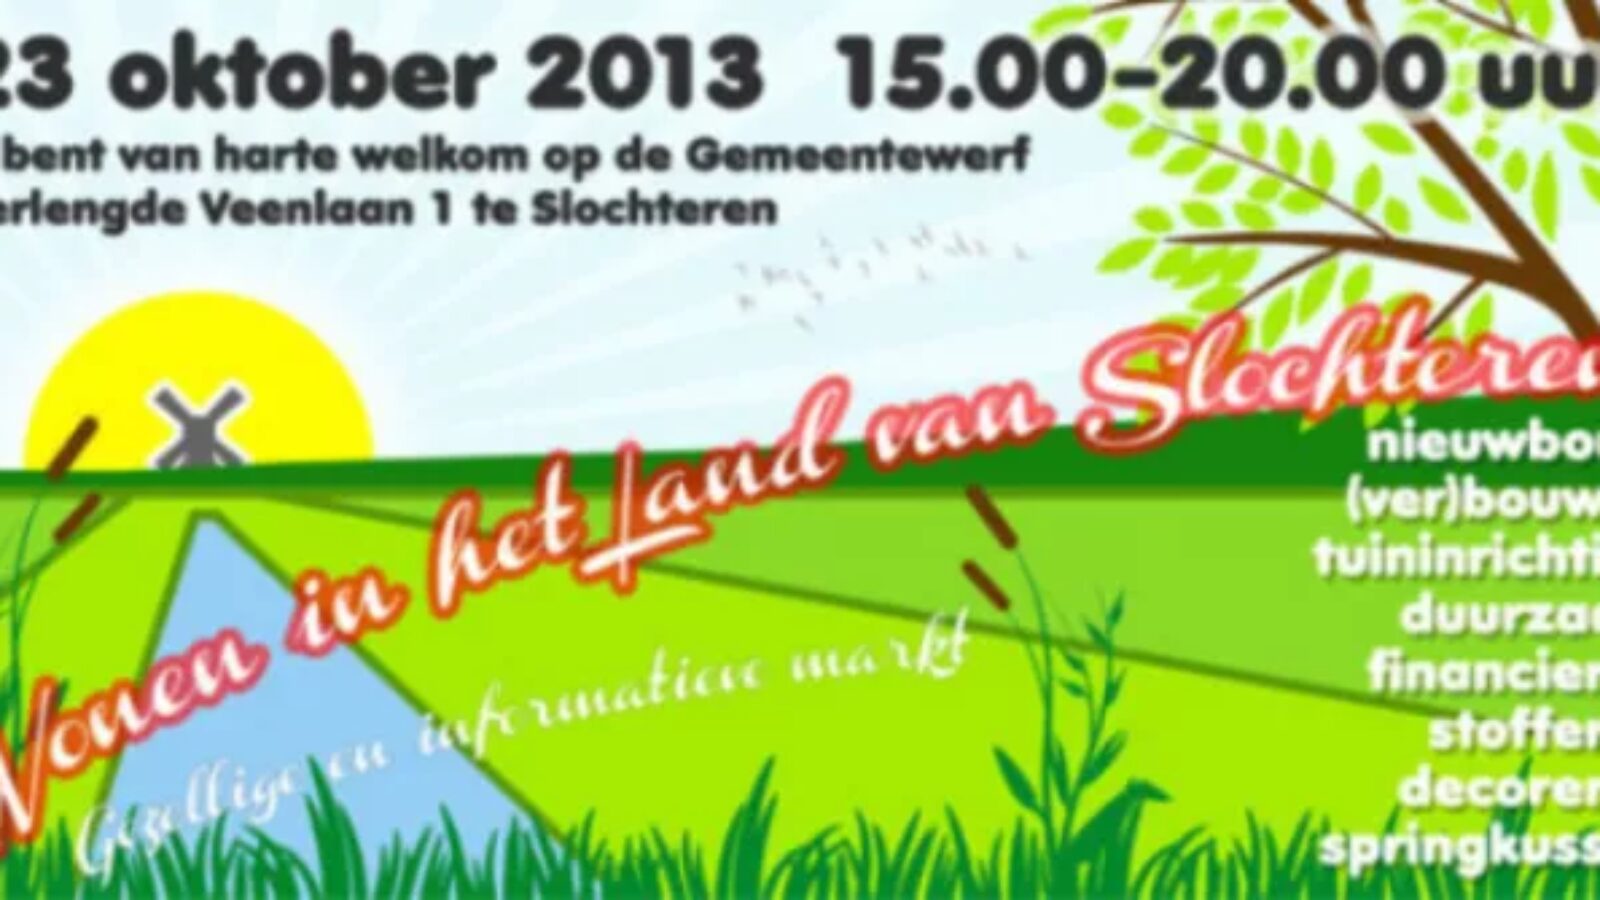 23 oktober: woonmarkt “Wonen in het land van Slochteren”